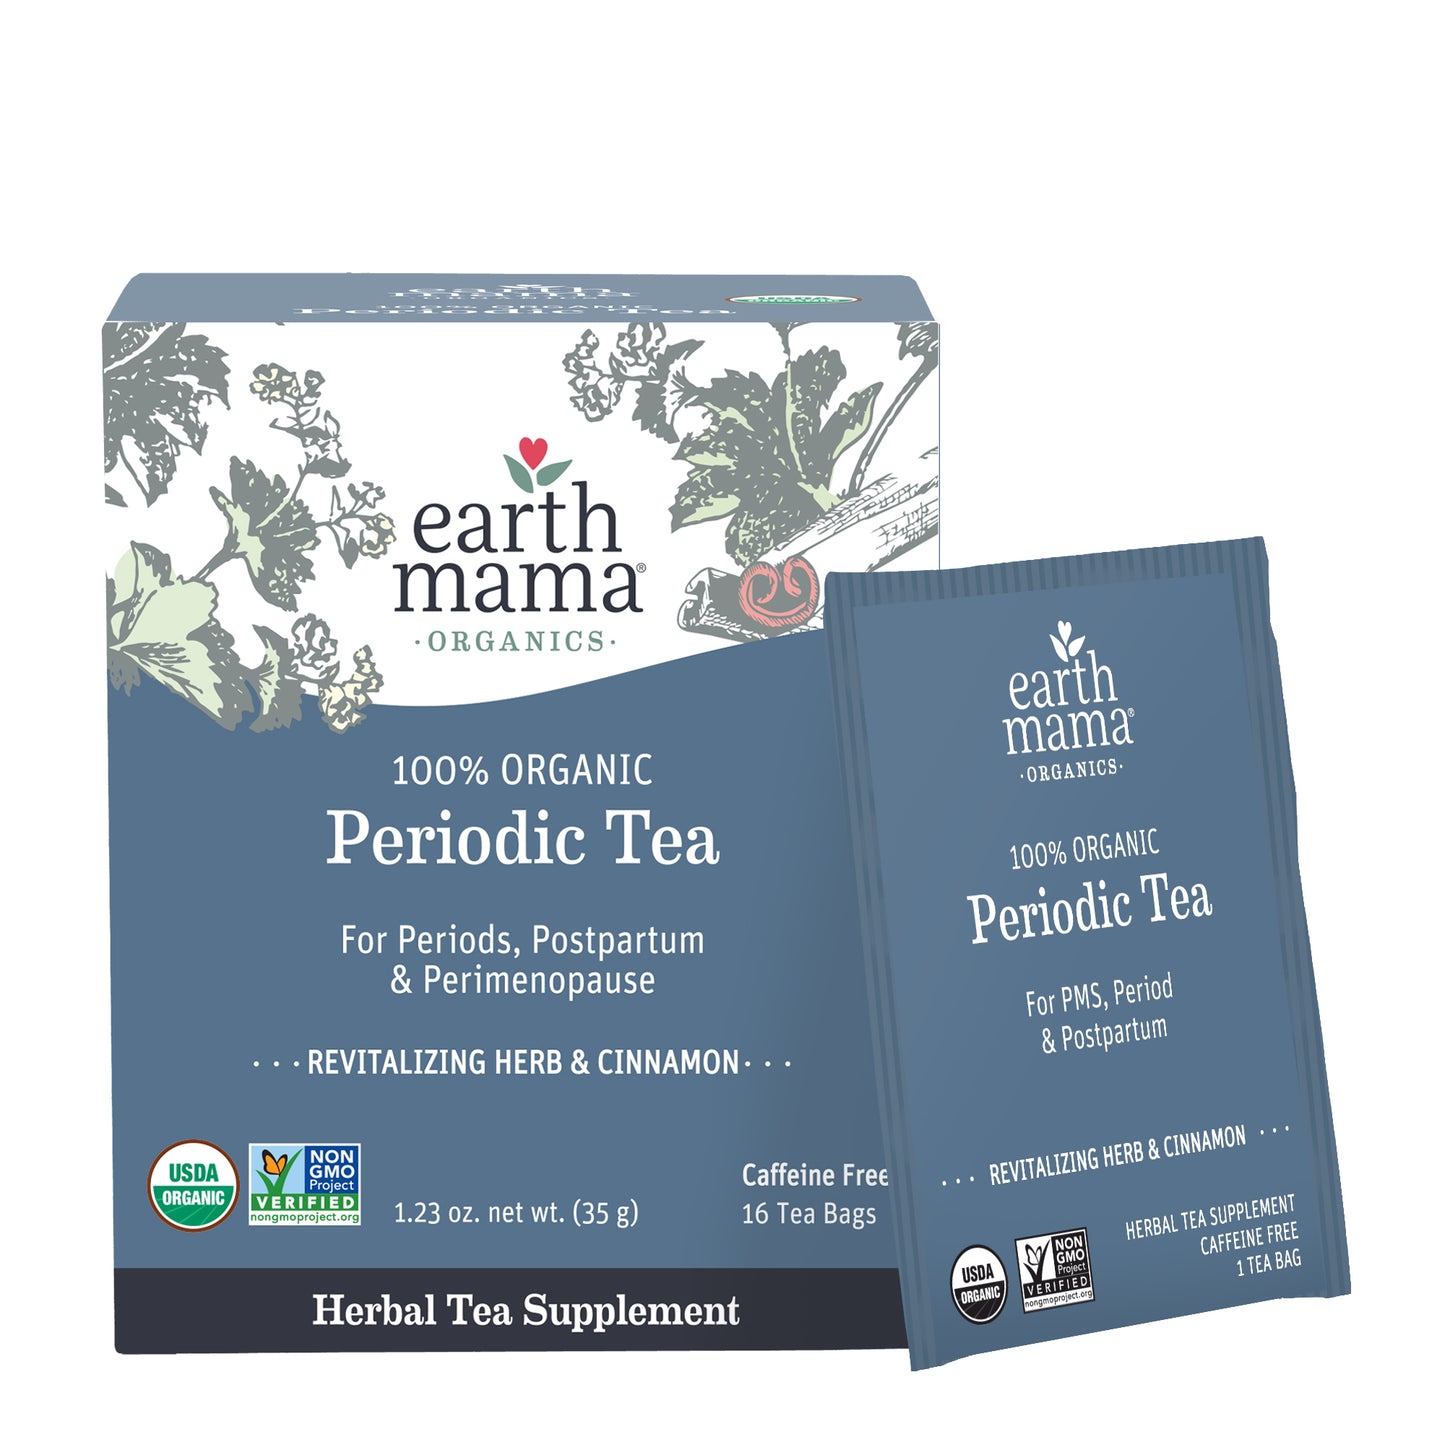 Organic Periodic Tea for perimenopause